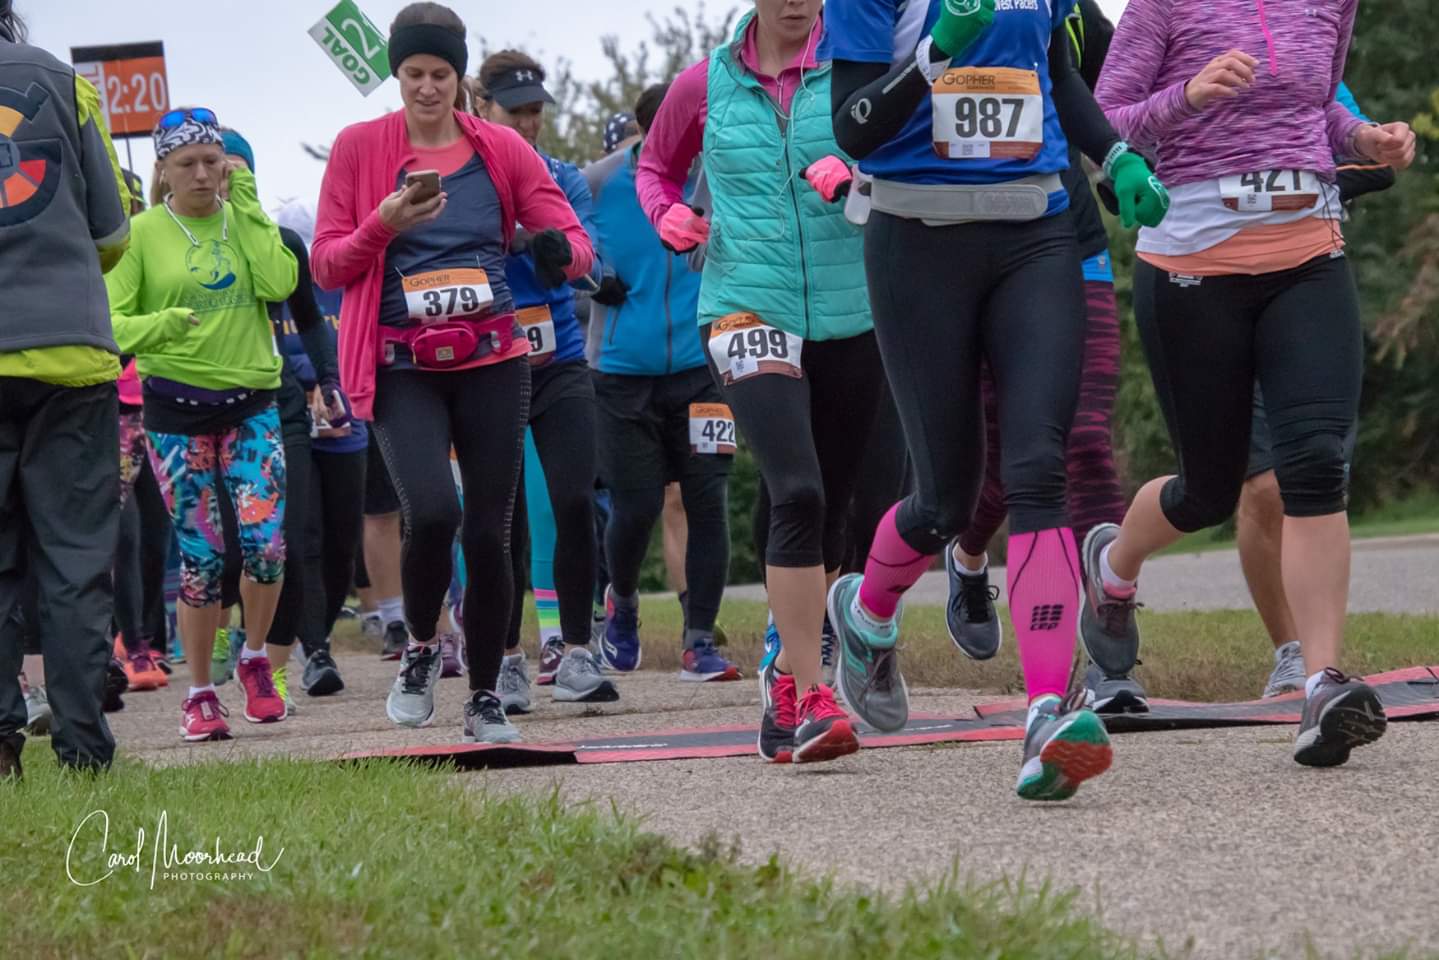 2018 Empowered Women's Half-Marathon and 5k